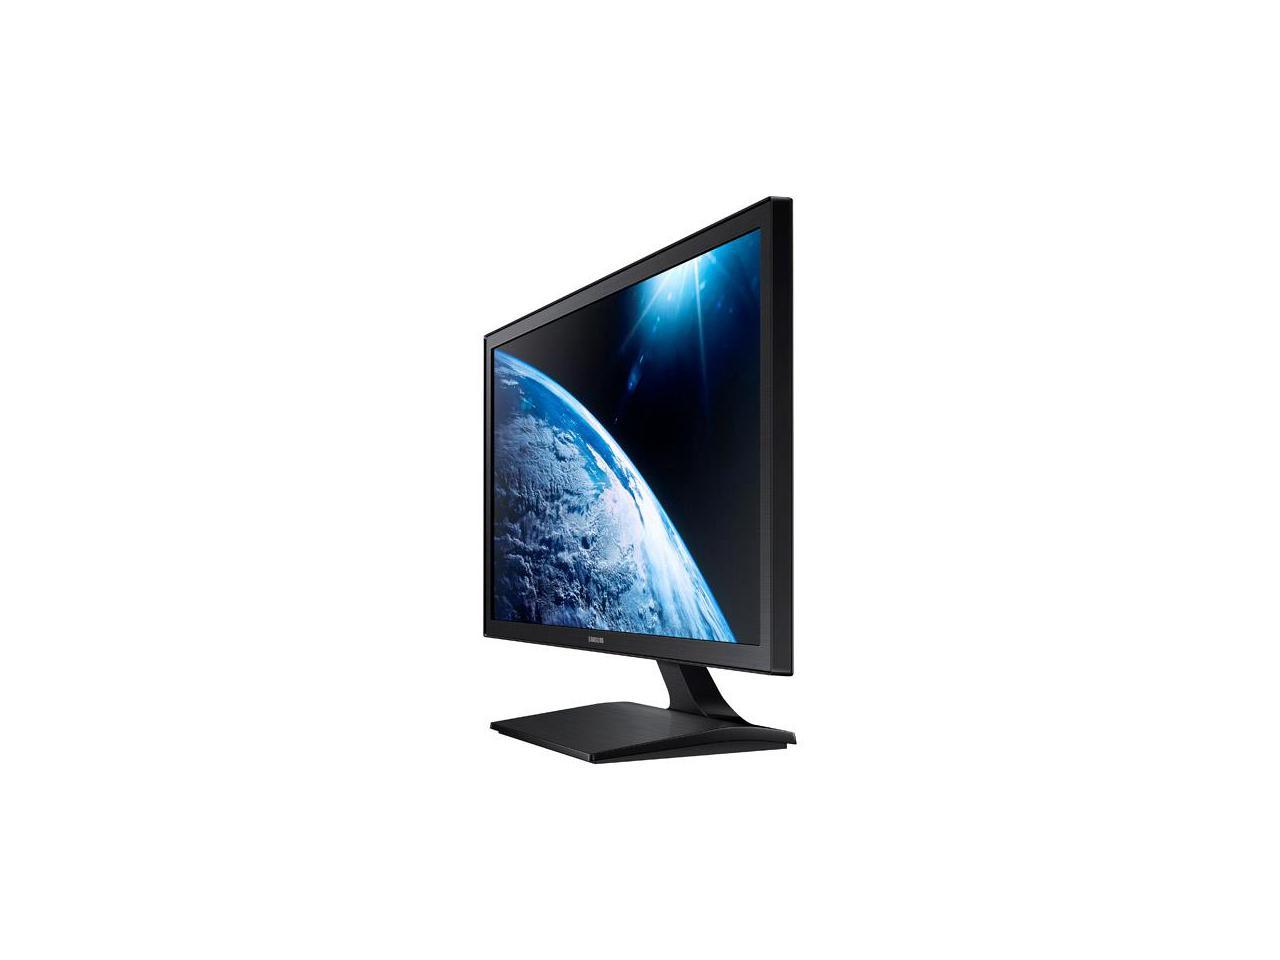 Samsung LS22E310HSJ/ZA 21.5" FHD 1080p 5ms LED LCD Monitor, 250cd/m2, HDMI/VGA, Tilt, VESA